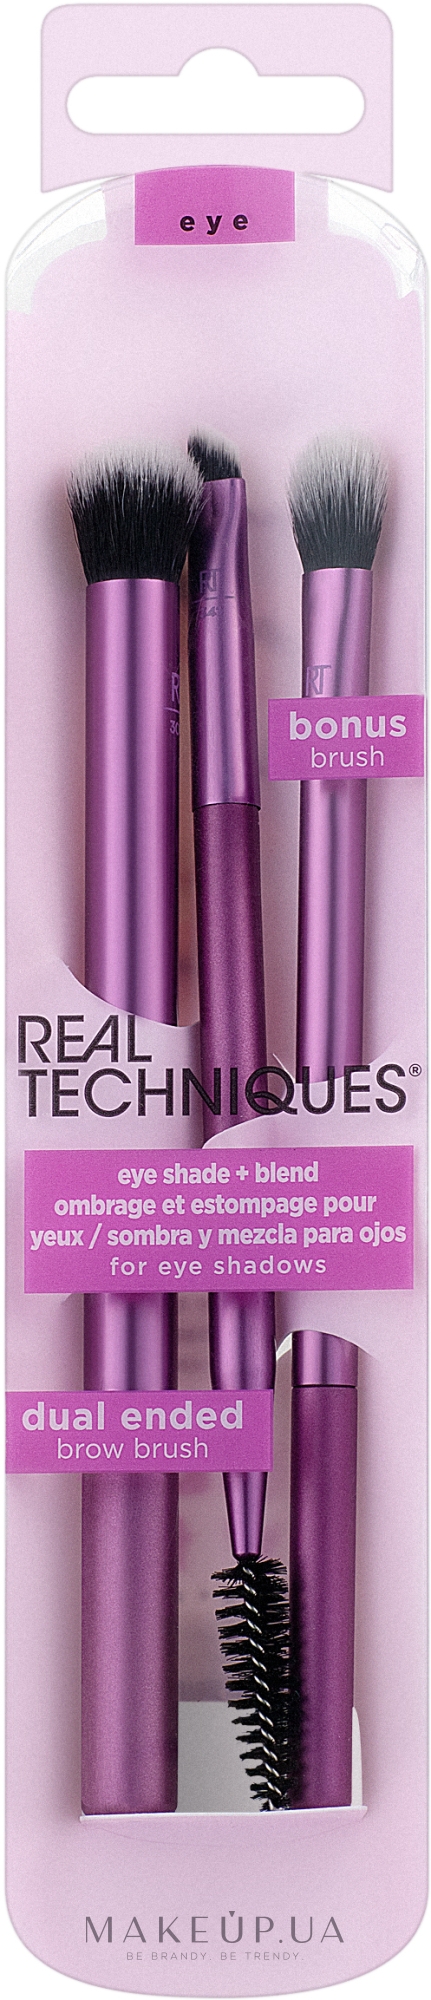 Набір пензлів для макіяжу - Real Techniques Eye Shade + Blend + Dual Ended Brow — фото 3шт